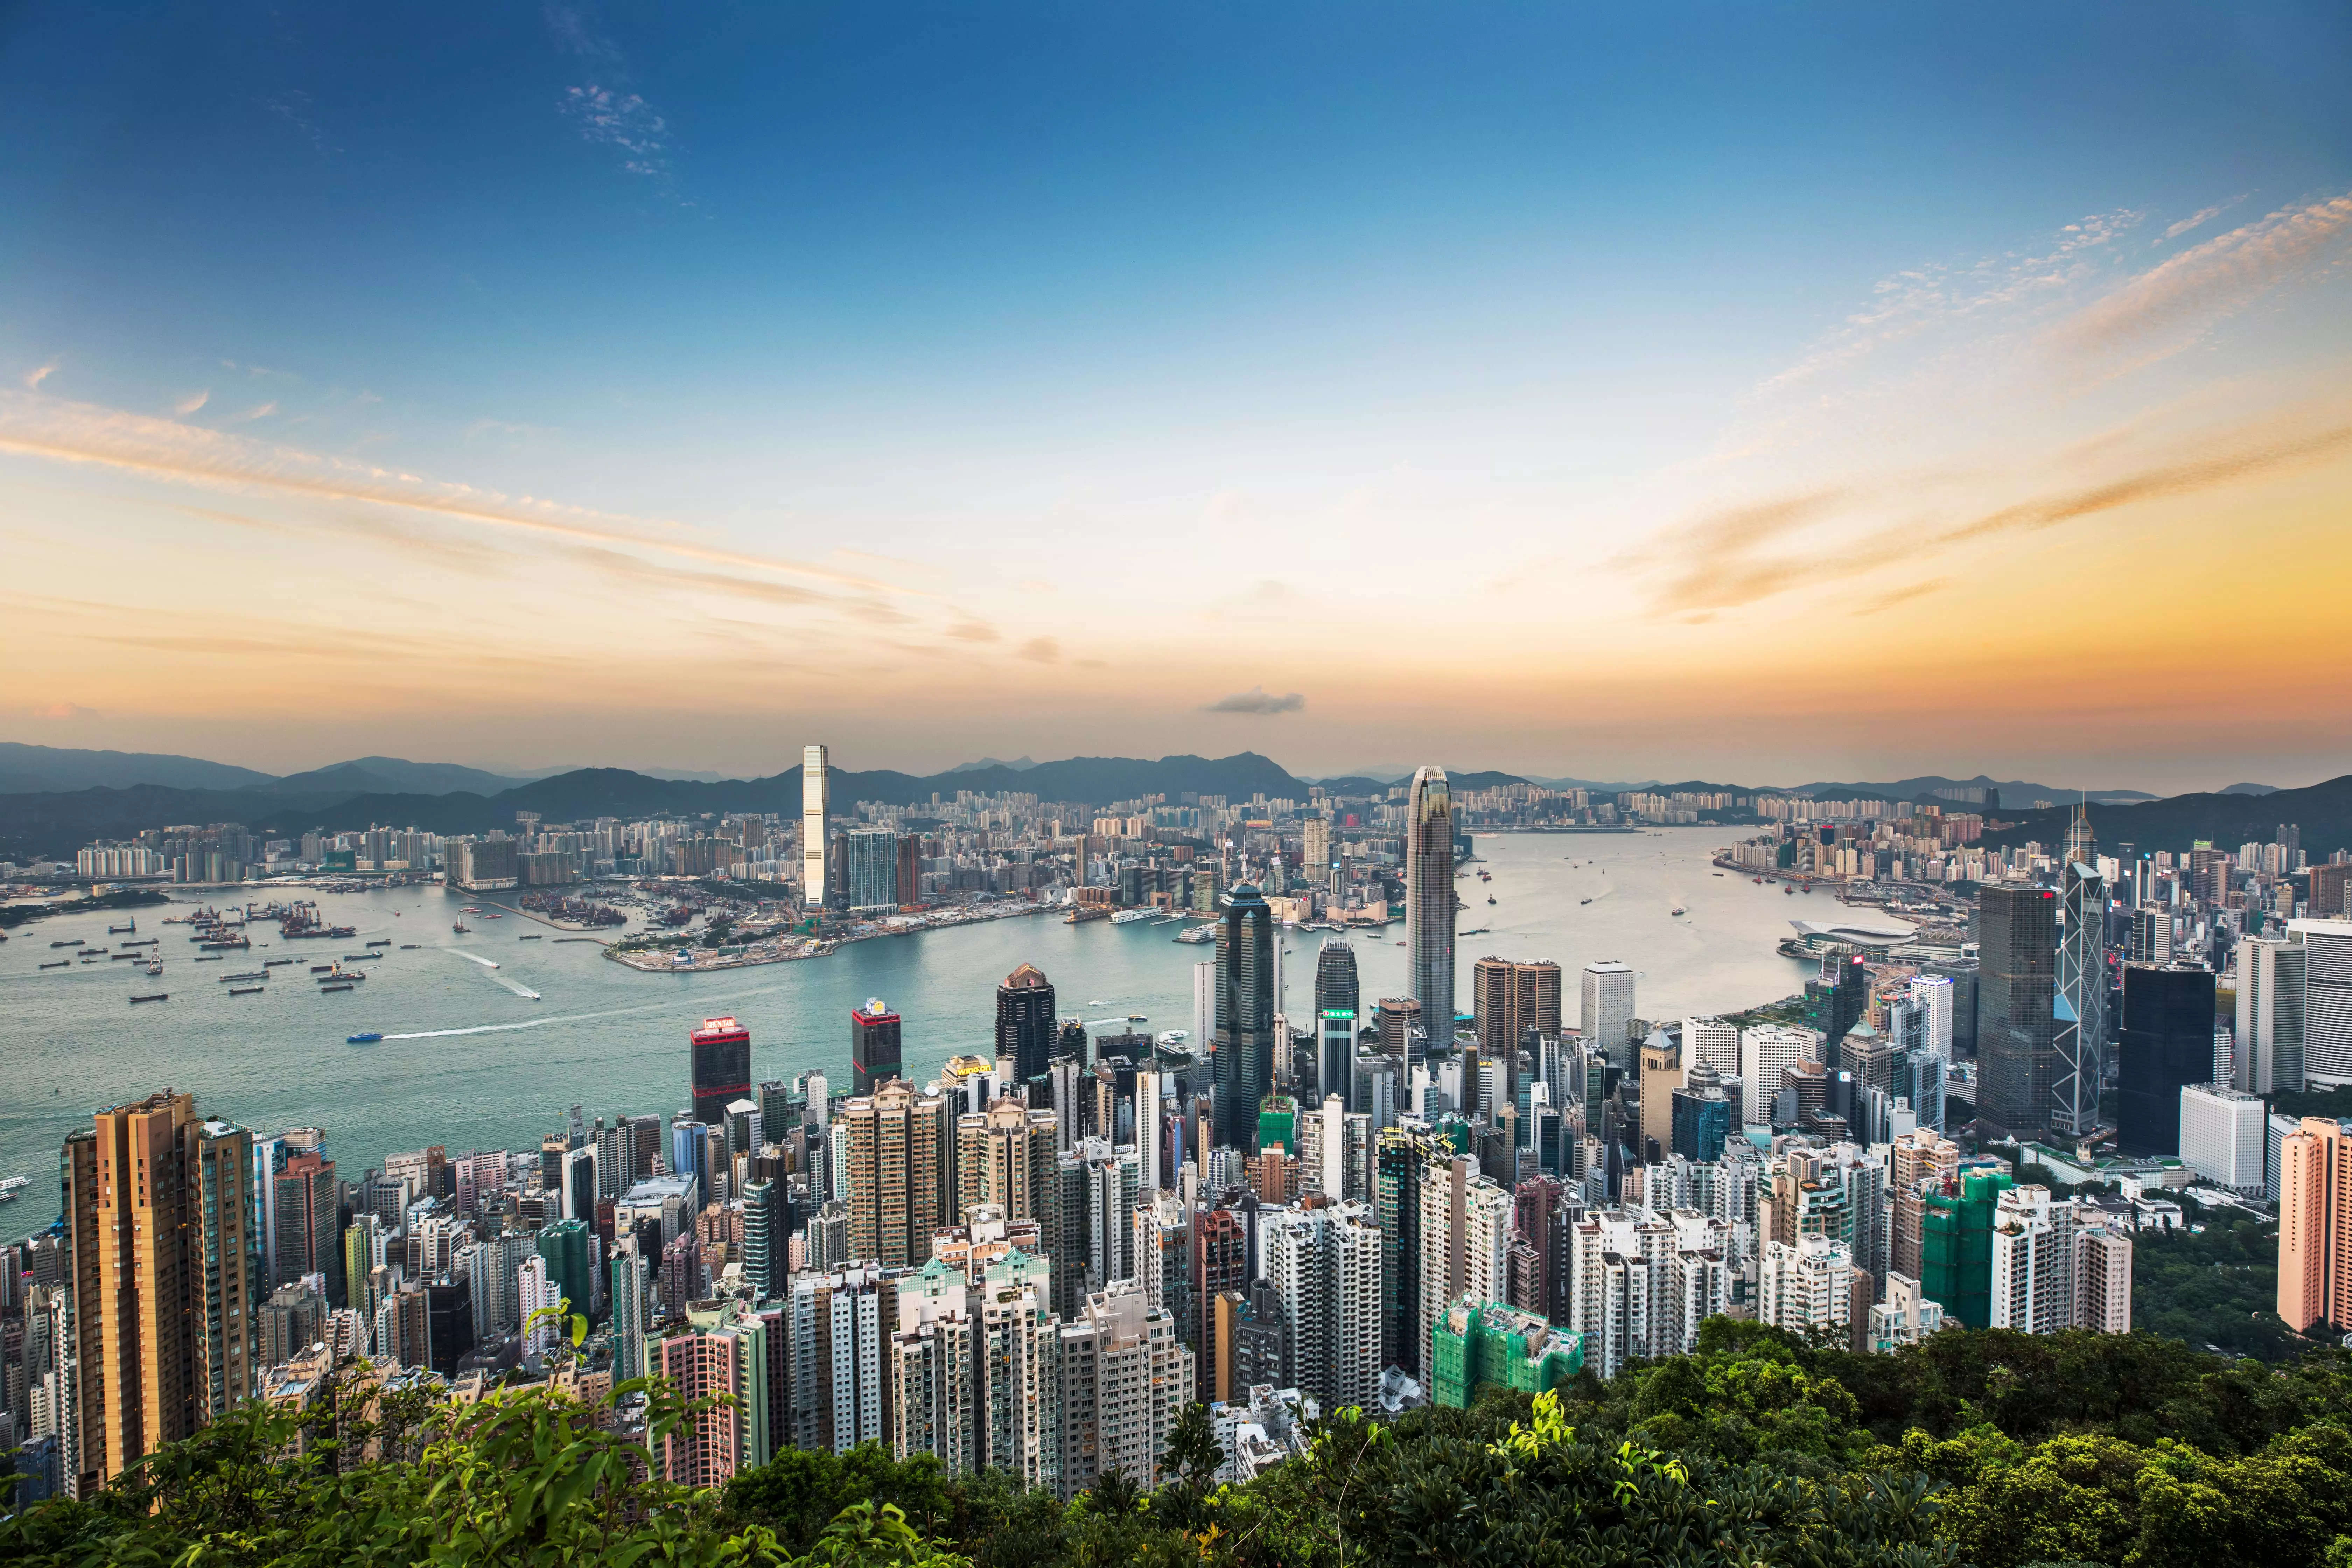 Hong Kong considers shorter Covid quarantine for travelers: Hong Kong's Chief Executive